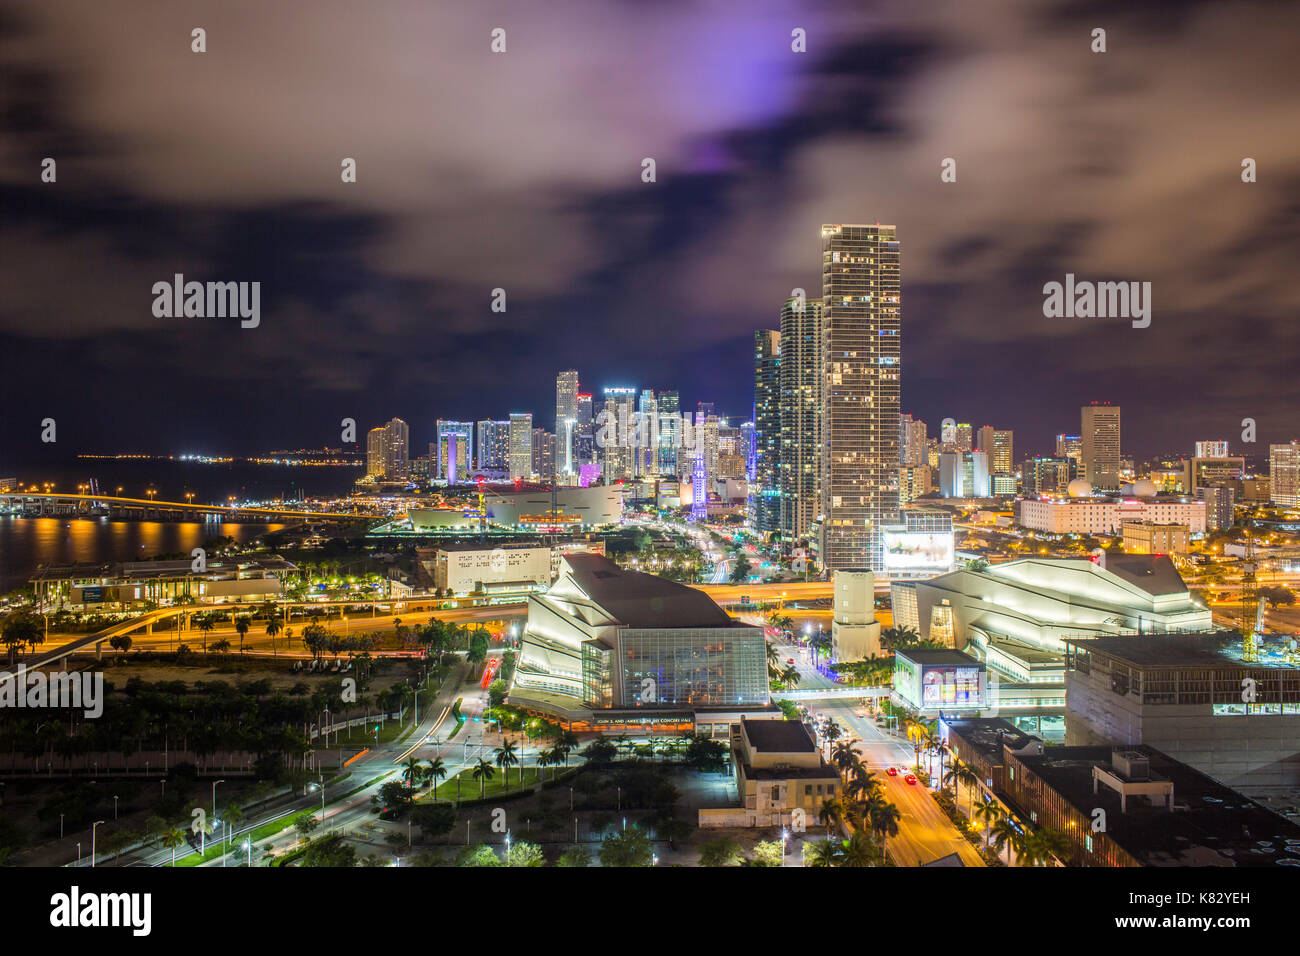 Erhöhten Blick auf Biscayne Boulevard und die Skyline von Miami, Florida, Vereinigte Staaten Stockfoto